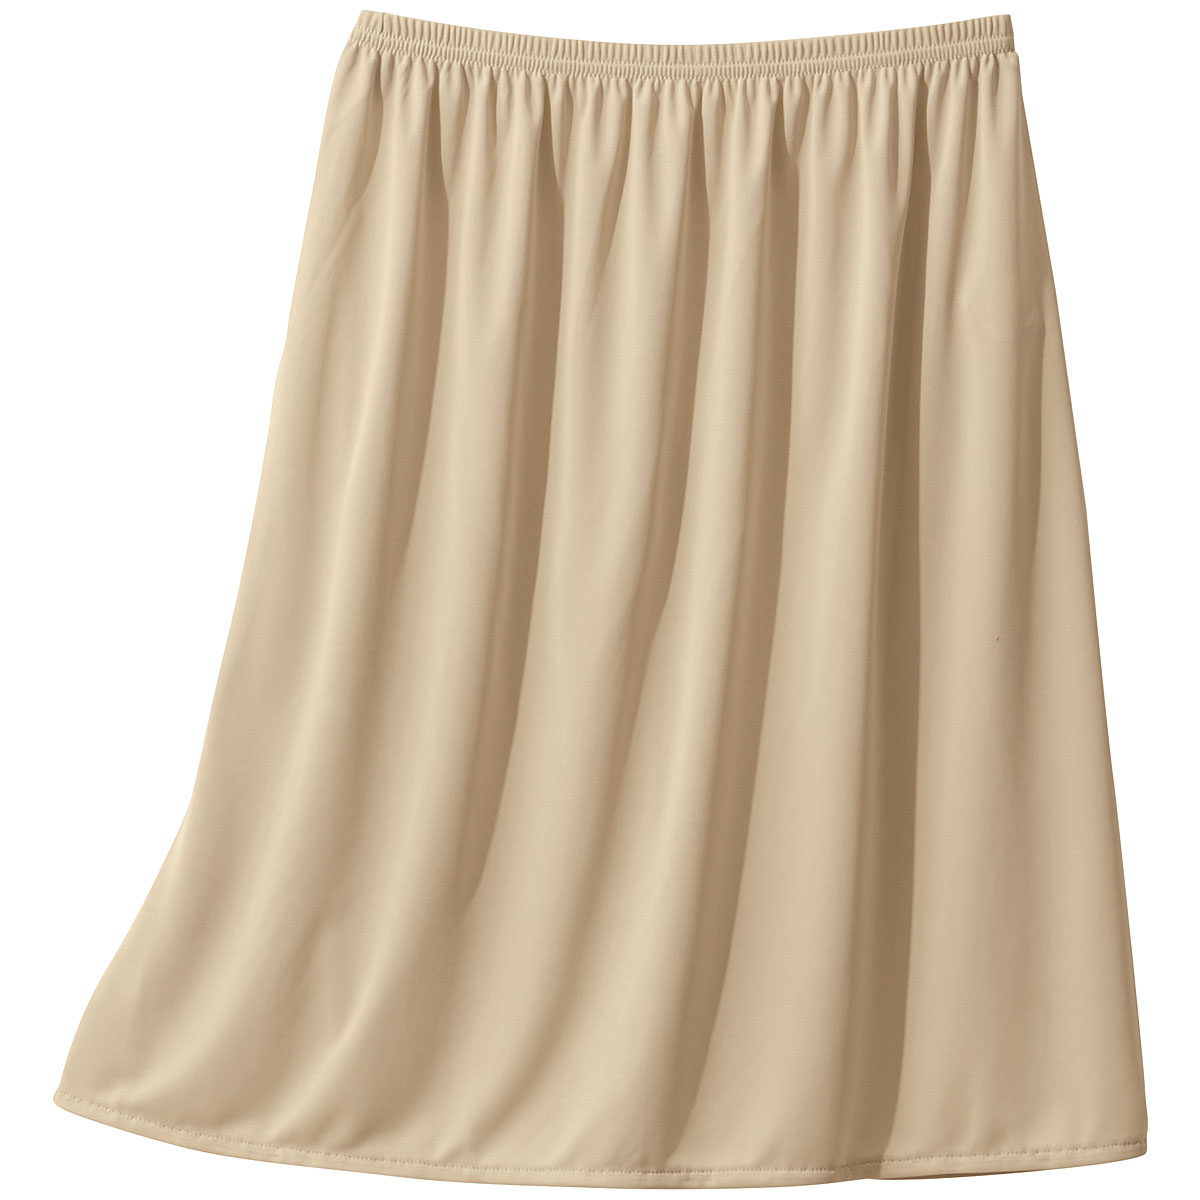 スカートに合わせて丈が選べる人気のペチコート(吸汗速乾・静電気防止) - ファッション通販ならセシール(cecile)